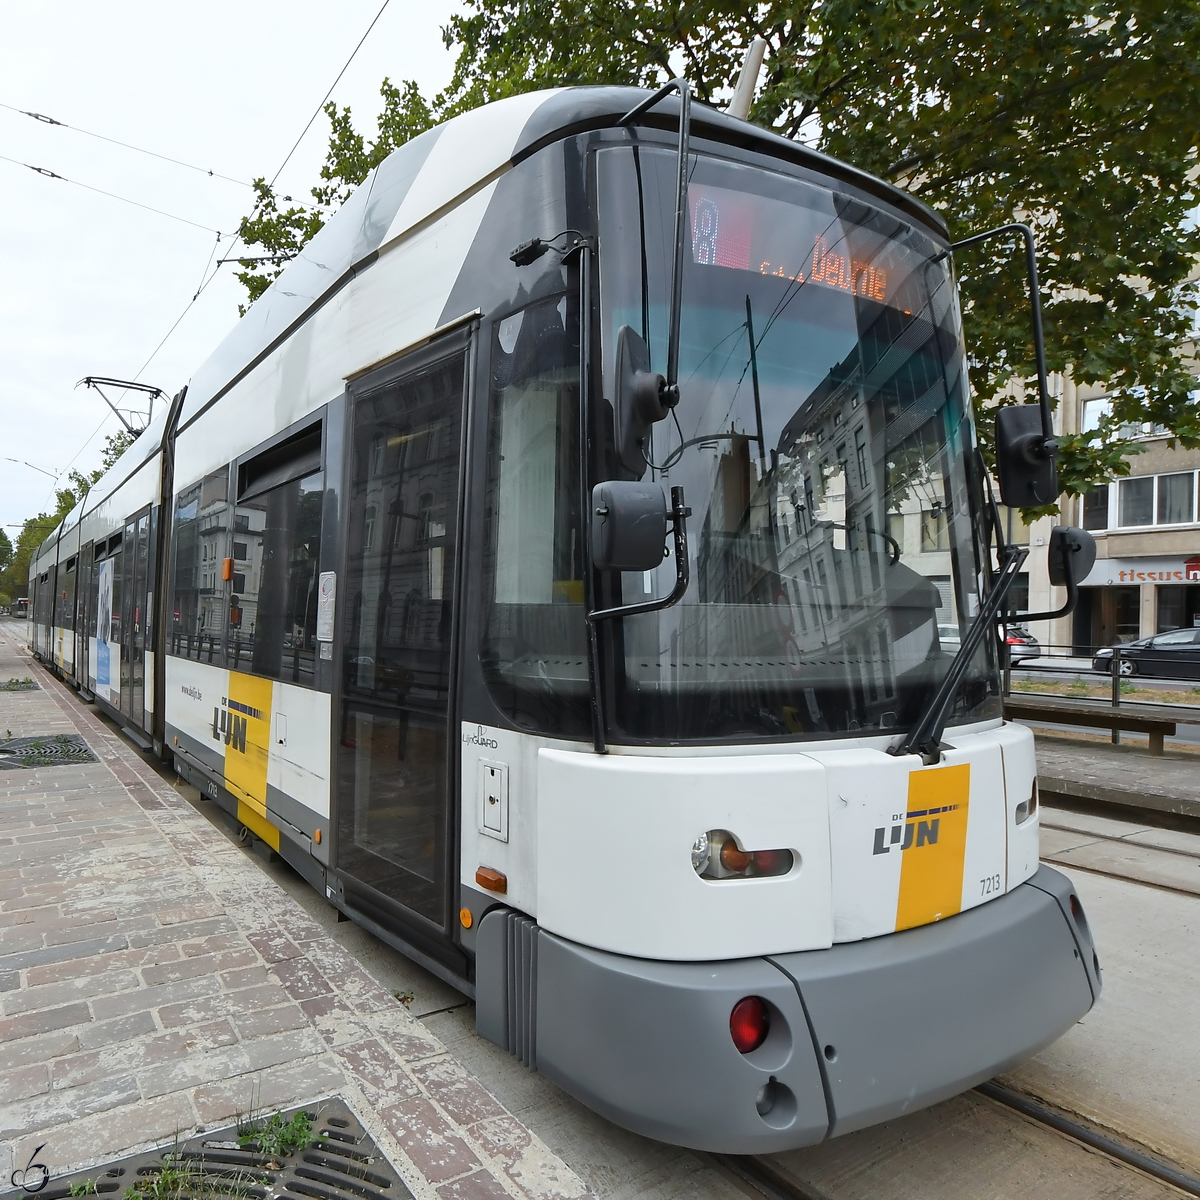 Ein Niederflurwagen vom Typs HermeLijn der Straßenbahn von Antwerpen. (Juli 2018)